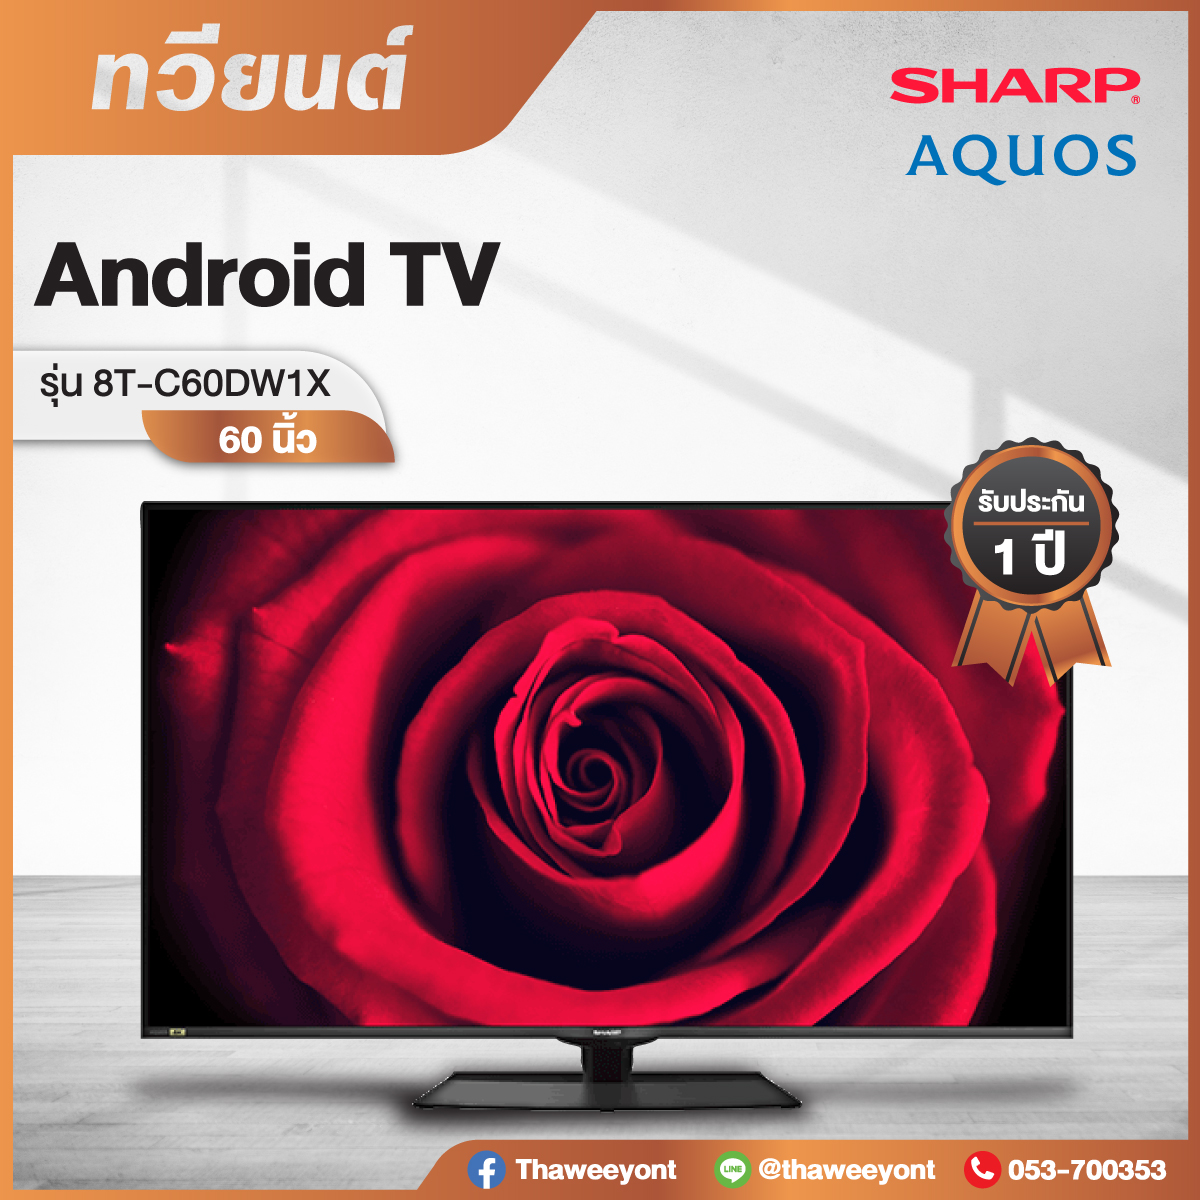 Sharp AQOUS 8K LED TV รุ่น 8T-C60DW1X ขนาด 60 นิ้ว 8K Android TV